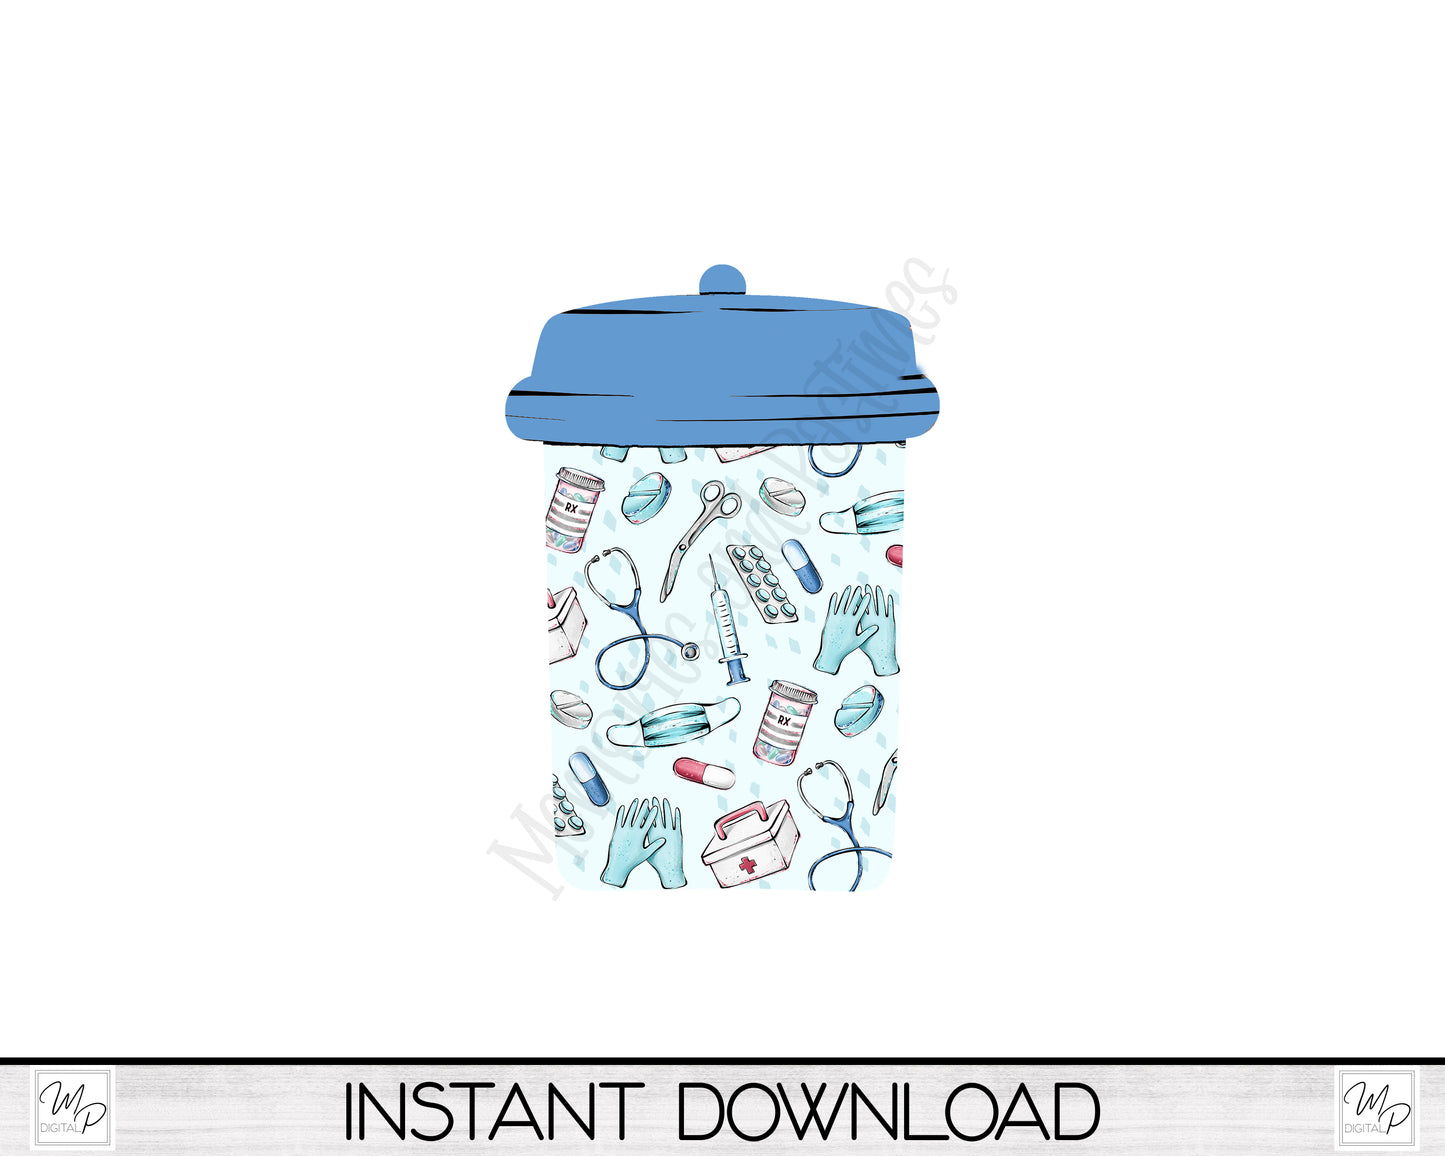 Nurse Coffee Cup Liquor Bottle Holder, Ornament PNG for Sublimation, Digital Download Design